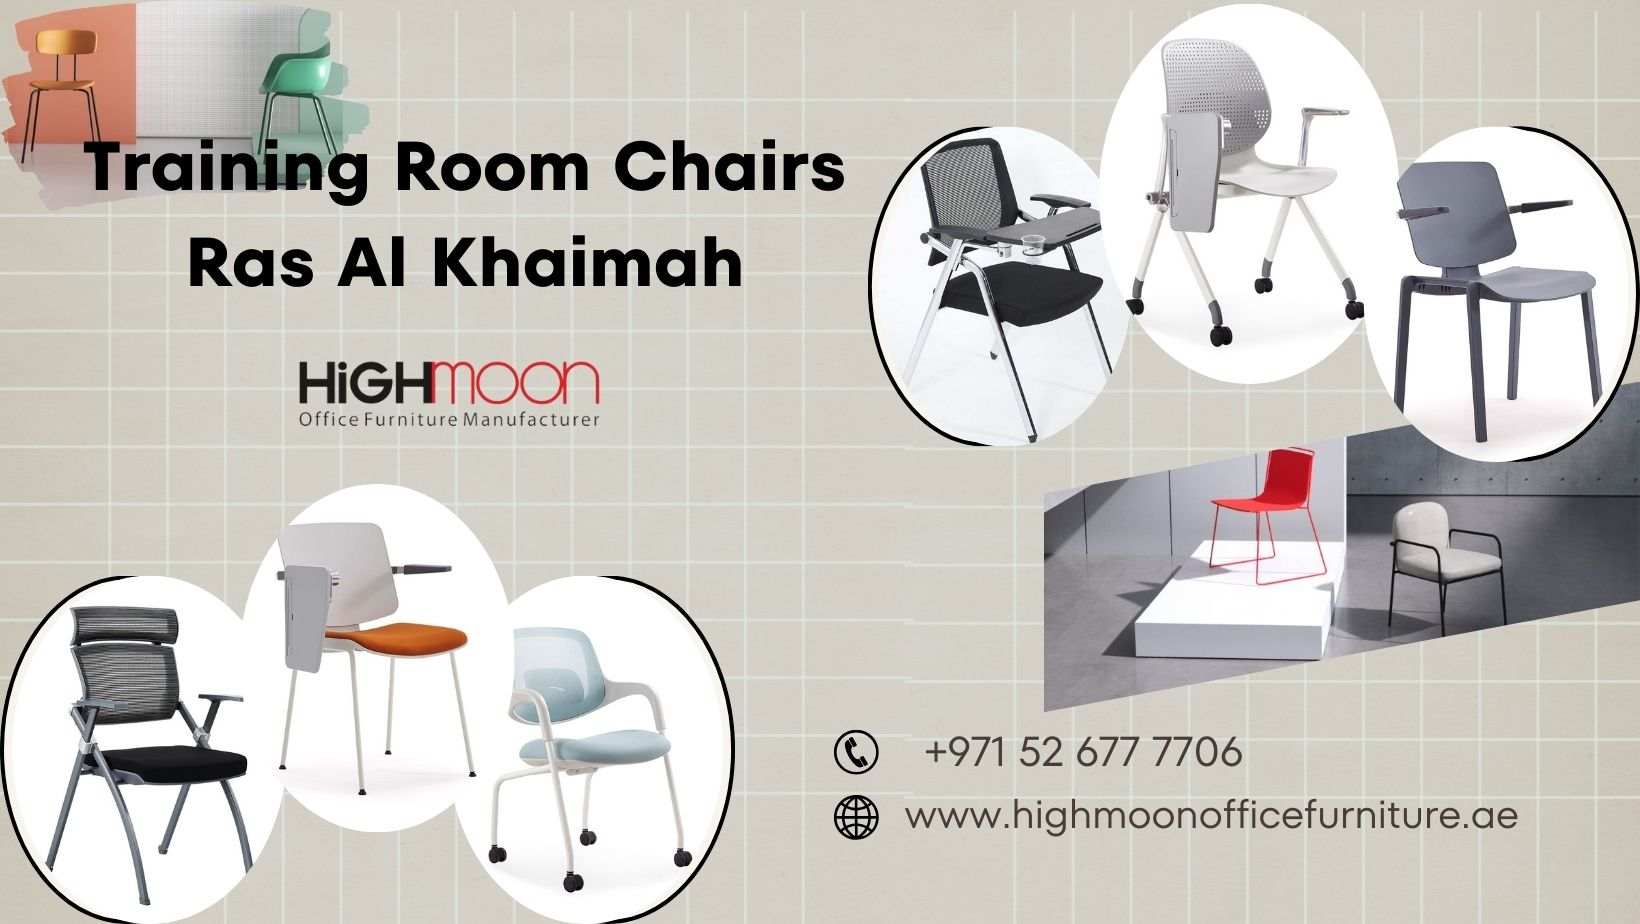 Training Room Chairs Ras Al Khaimah